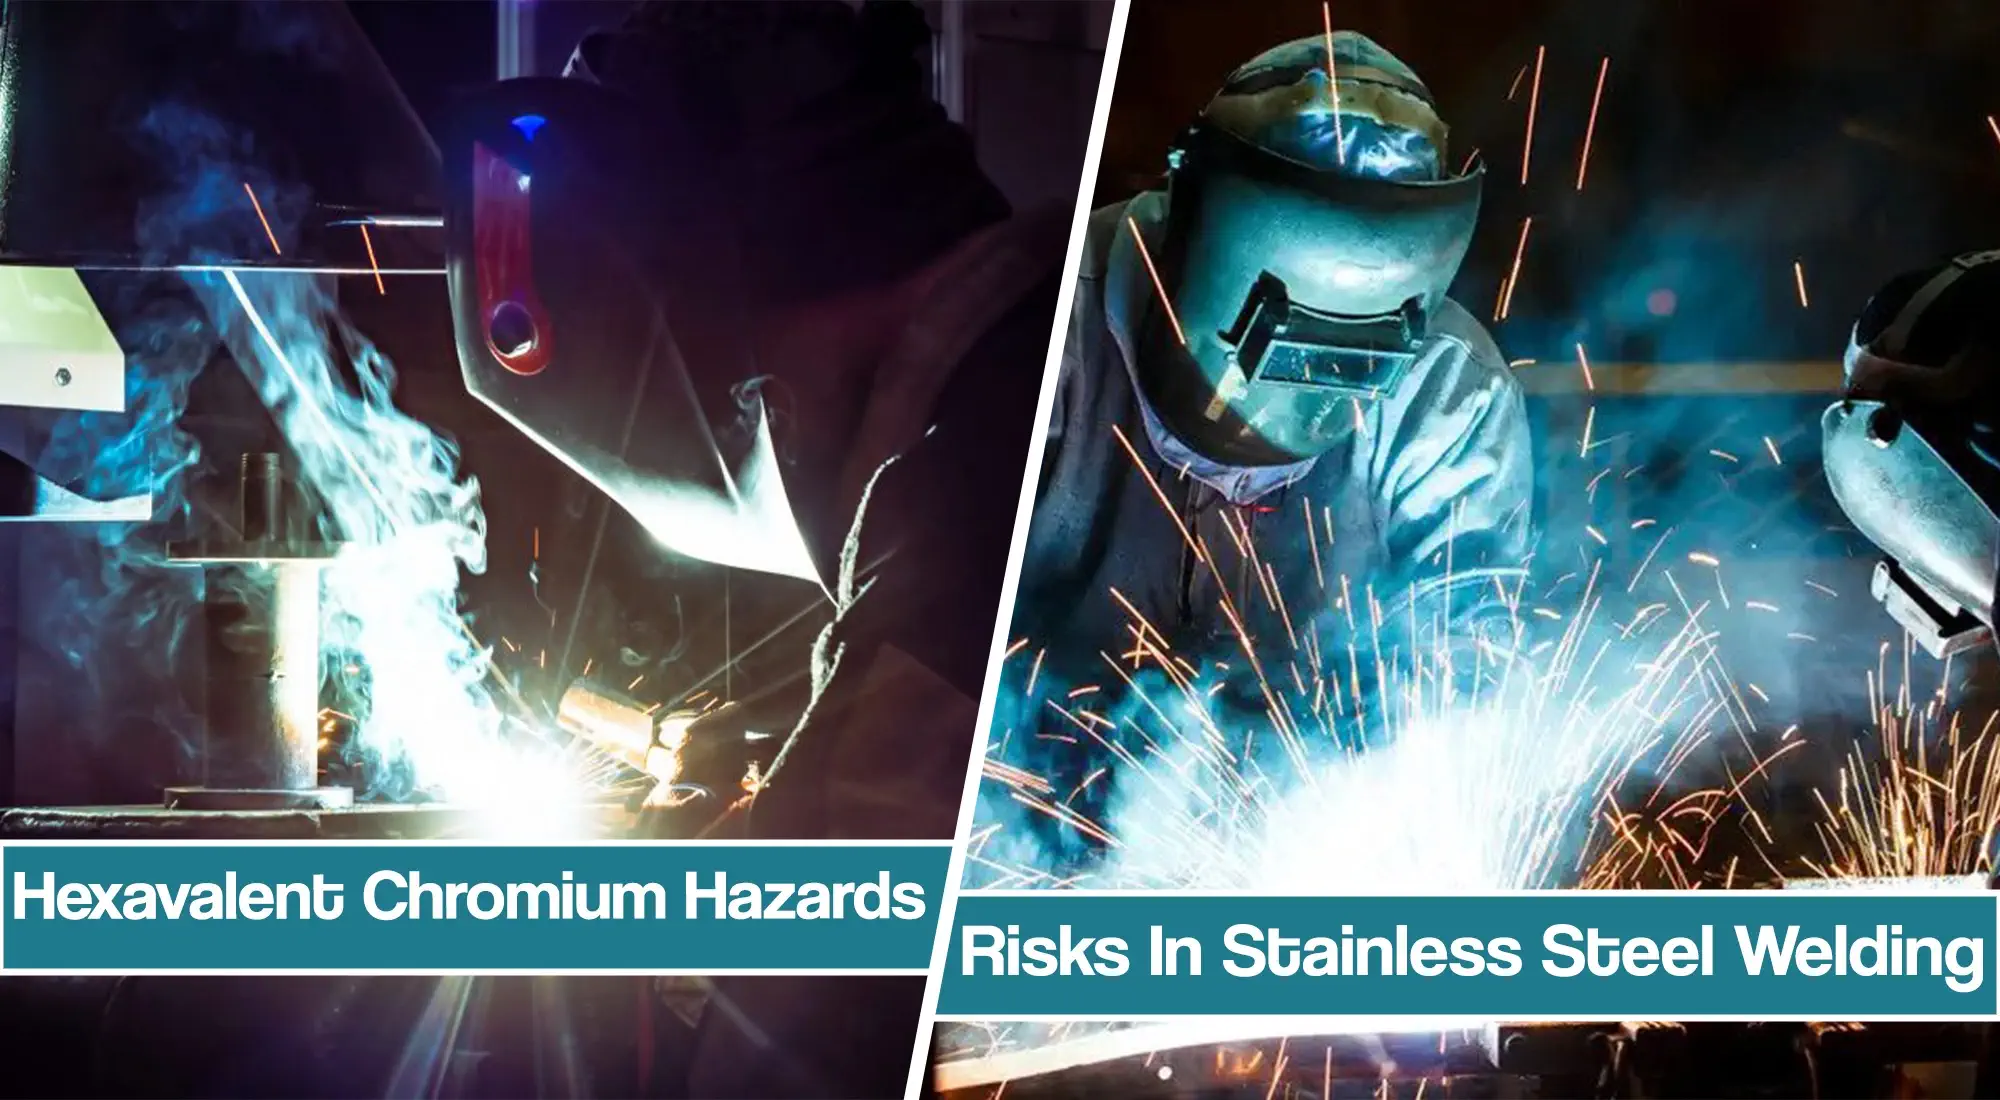 Risk Of Hexavalent Chromium in Stainless Steel Welding